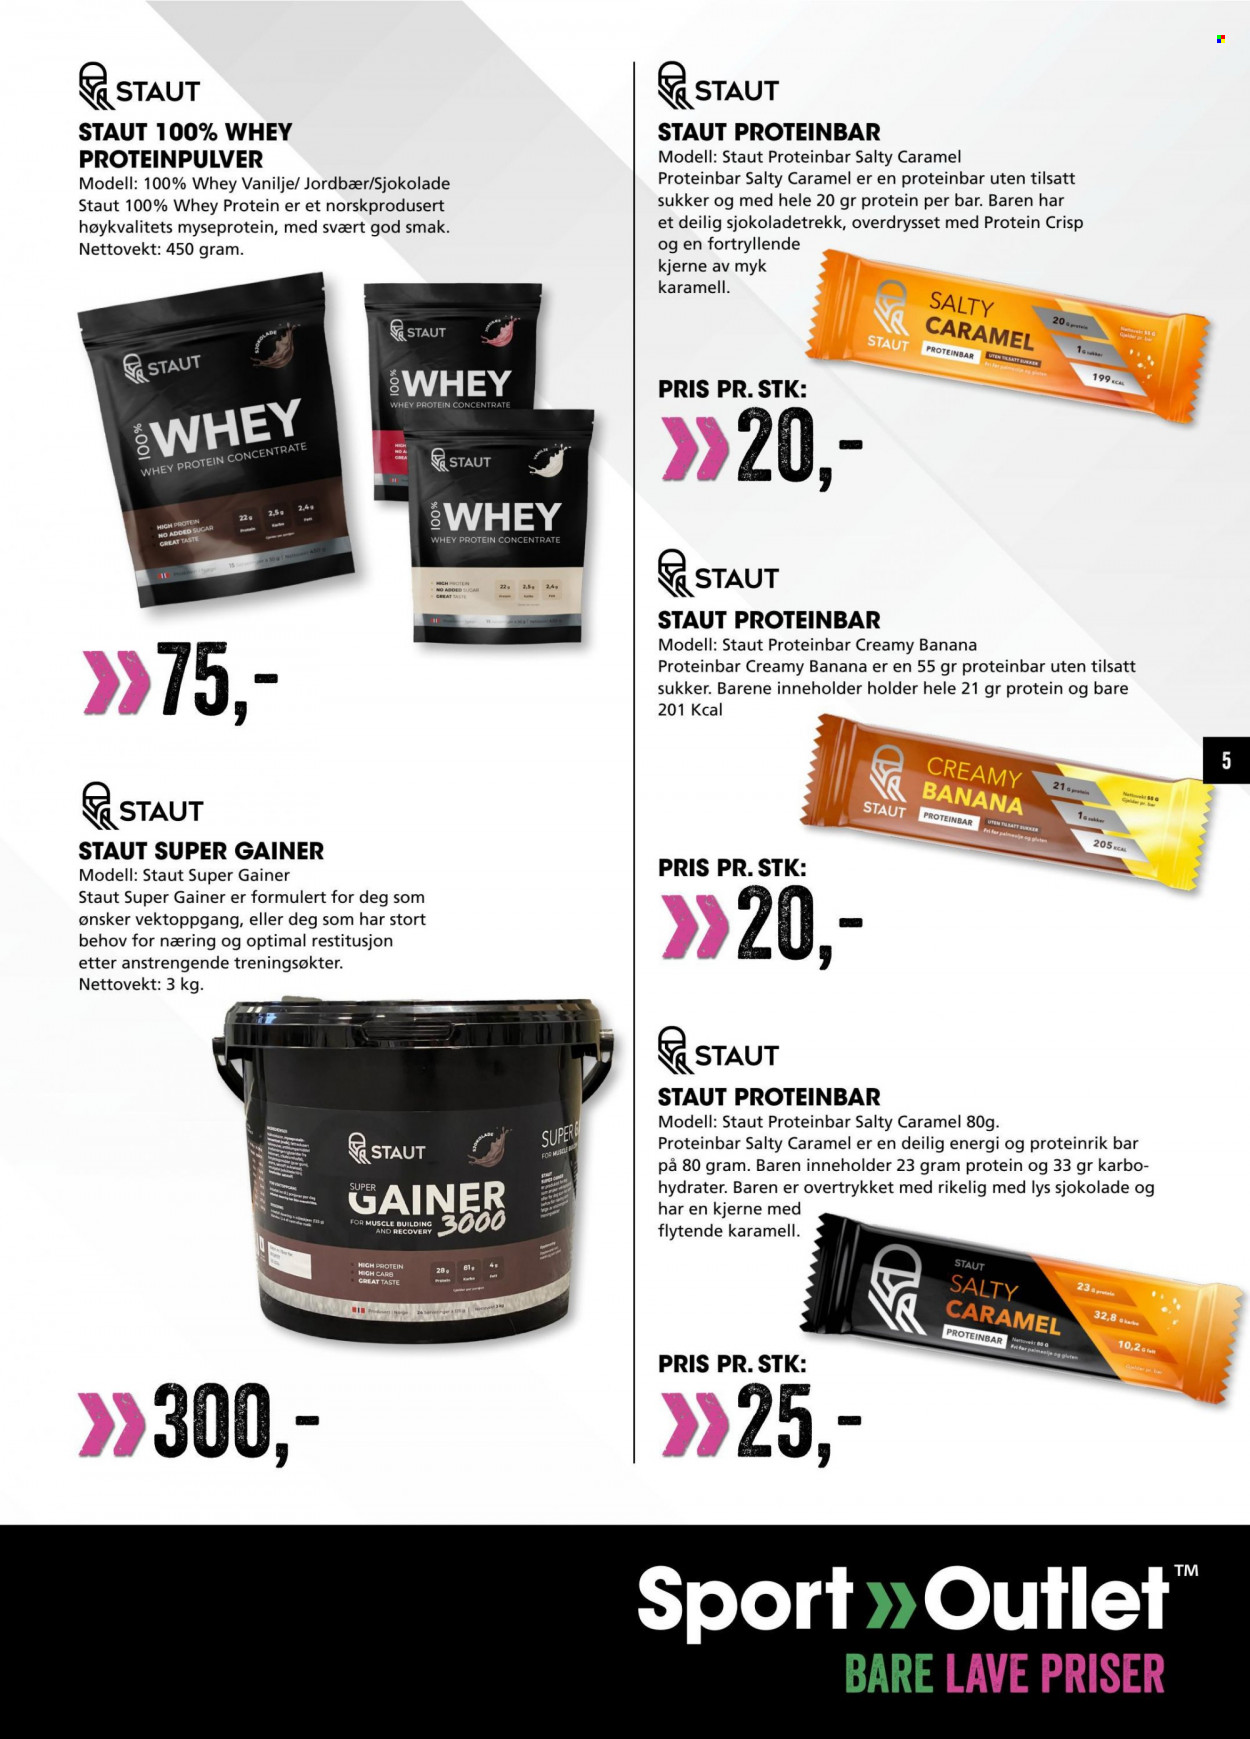 Kundeavis Sport Outlet - Produkter fra tilbudsaviser - protein, Proteinbar, sjokolade, sukker, lys. Side 5.